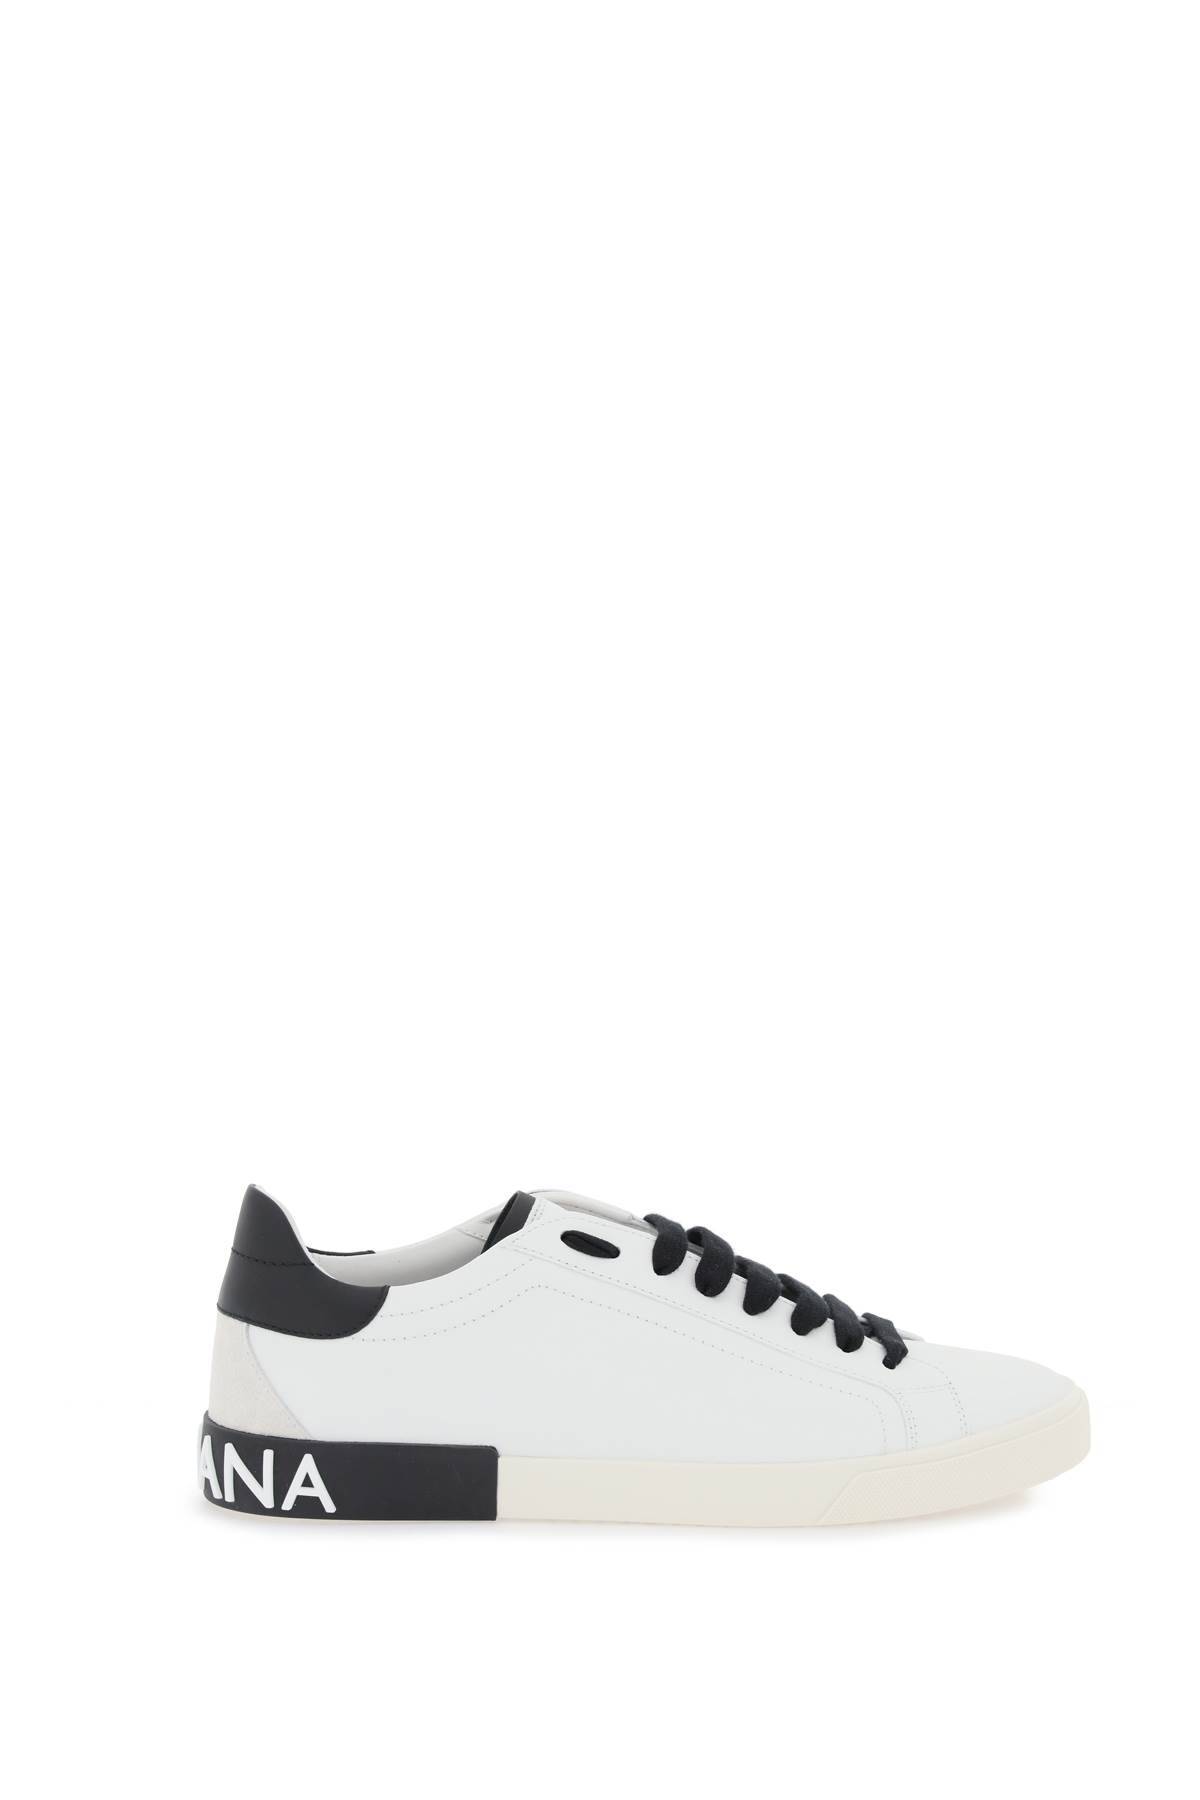 Shop Dolce & Gabbana Nappa Leather Portofino Sneakers In White,black